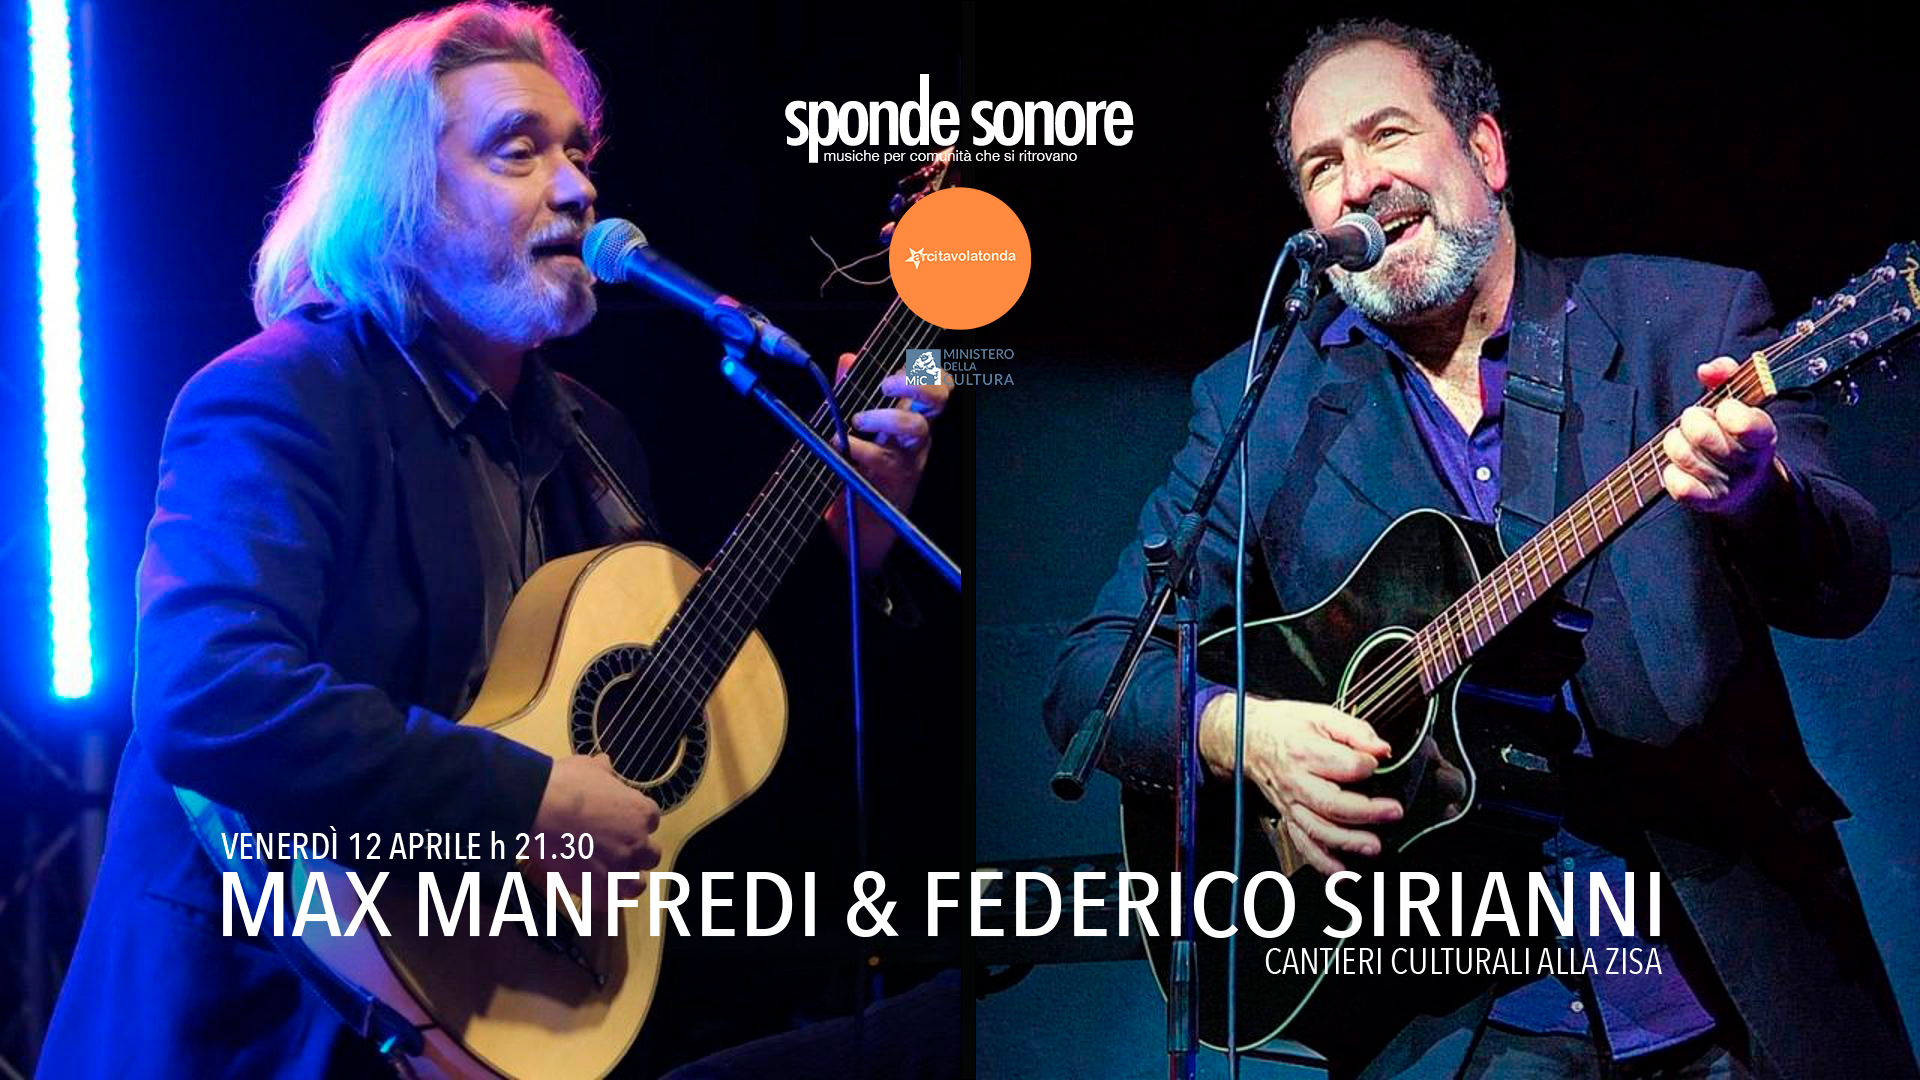 MAX MANFREDI & FEDERICO SIRIANNI @ SPONDE SONORE